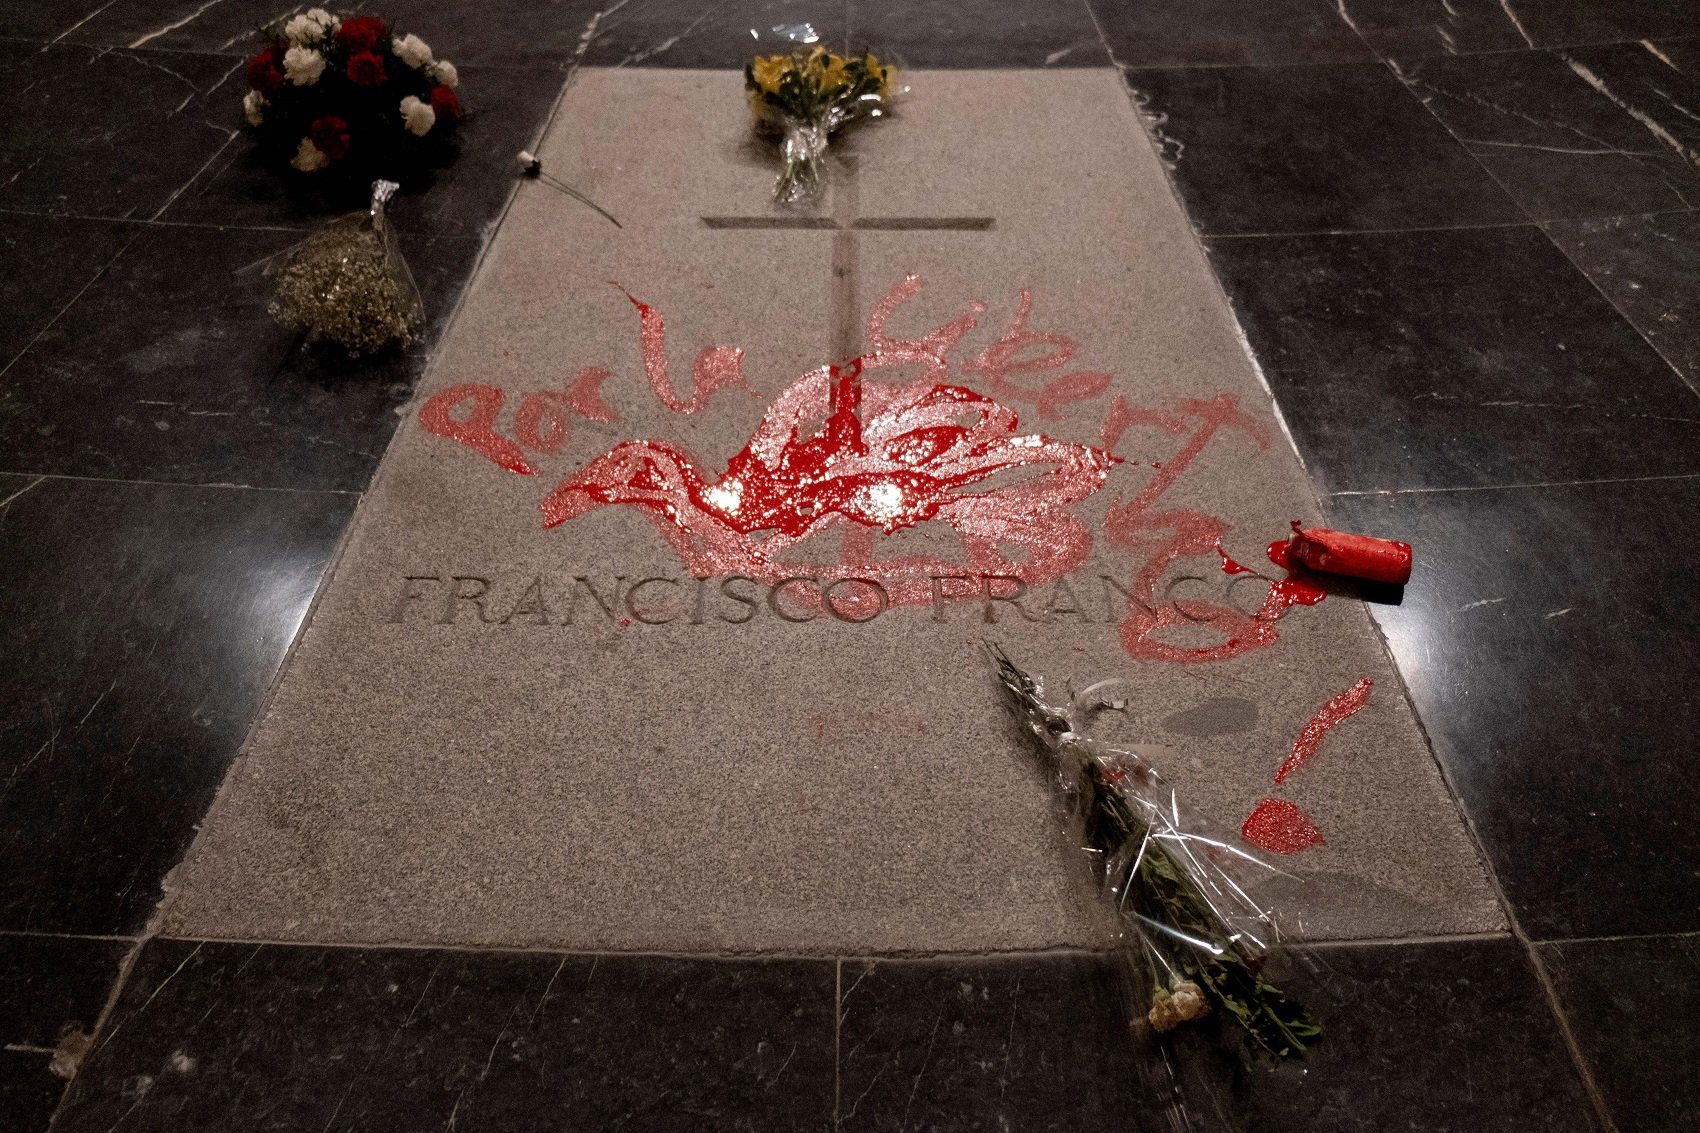 La Fiscalía pide un año de prisión a un artista por pintar la tumba de Franco